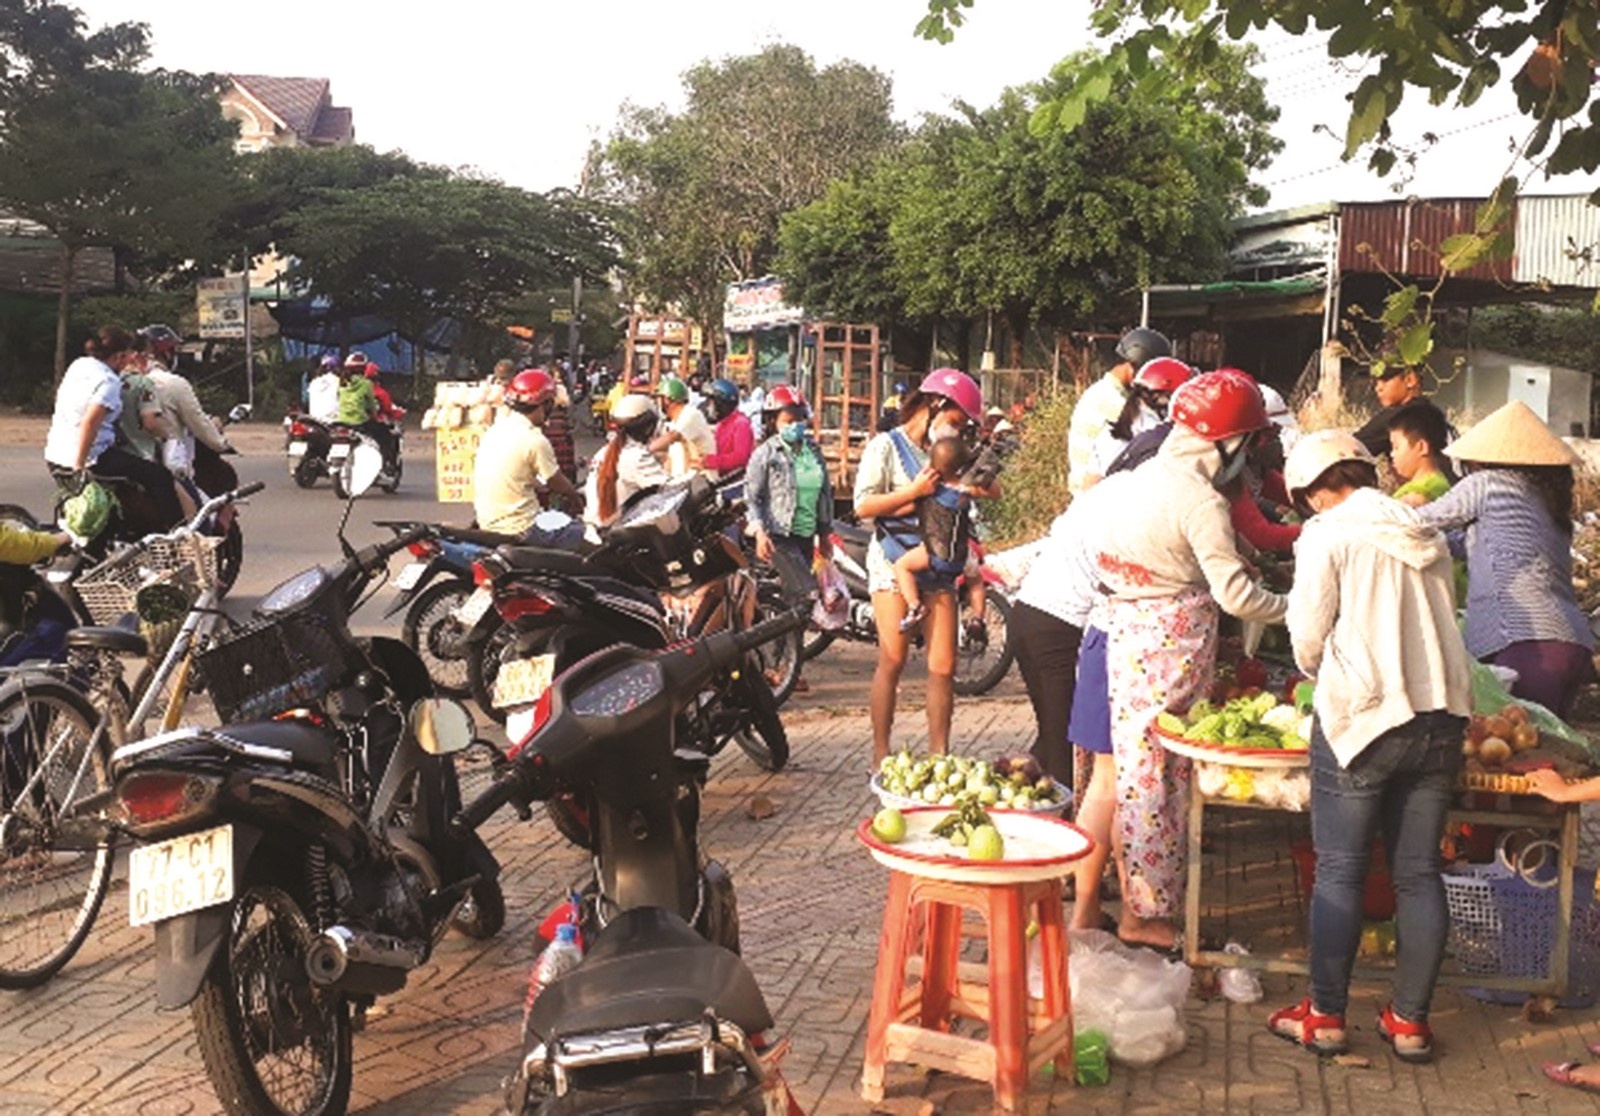 TP. Hồ Chí Minh: Kiểm soát chợ tự phát để ngăn nguy cơ dịch bệnh